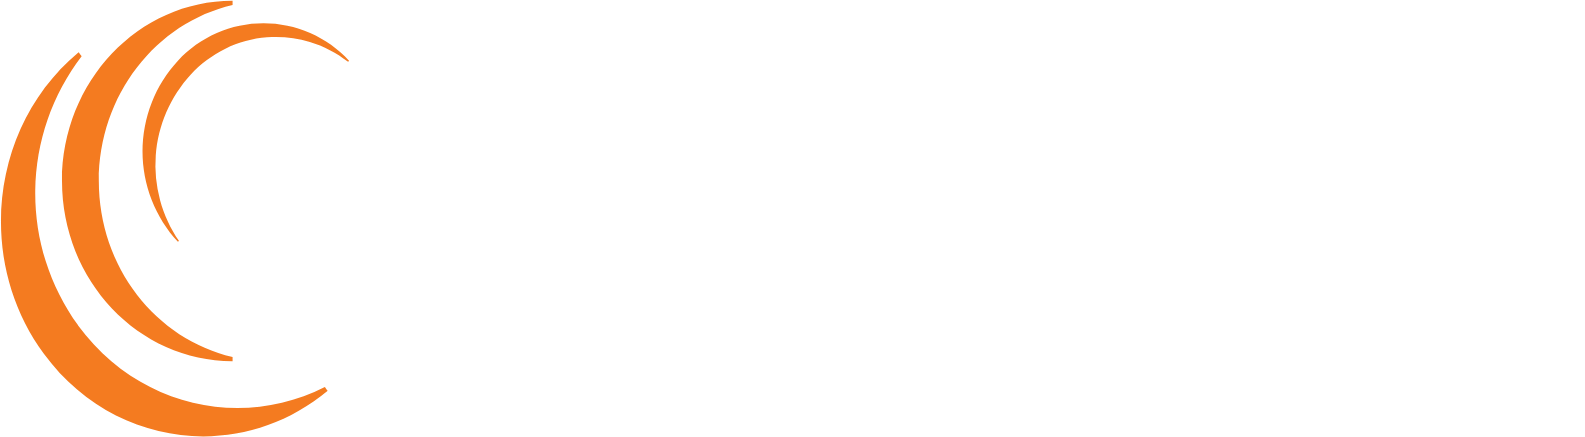 Soligenix logo large for dark backgrounds (transparent PNG)